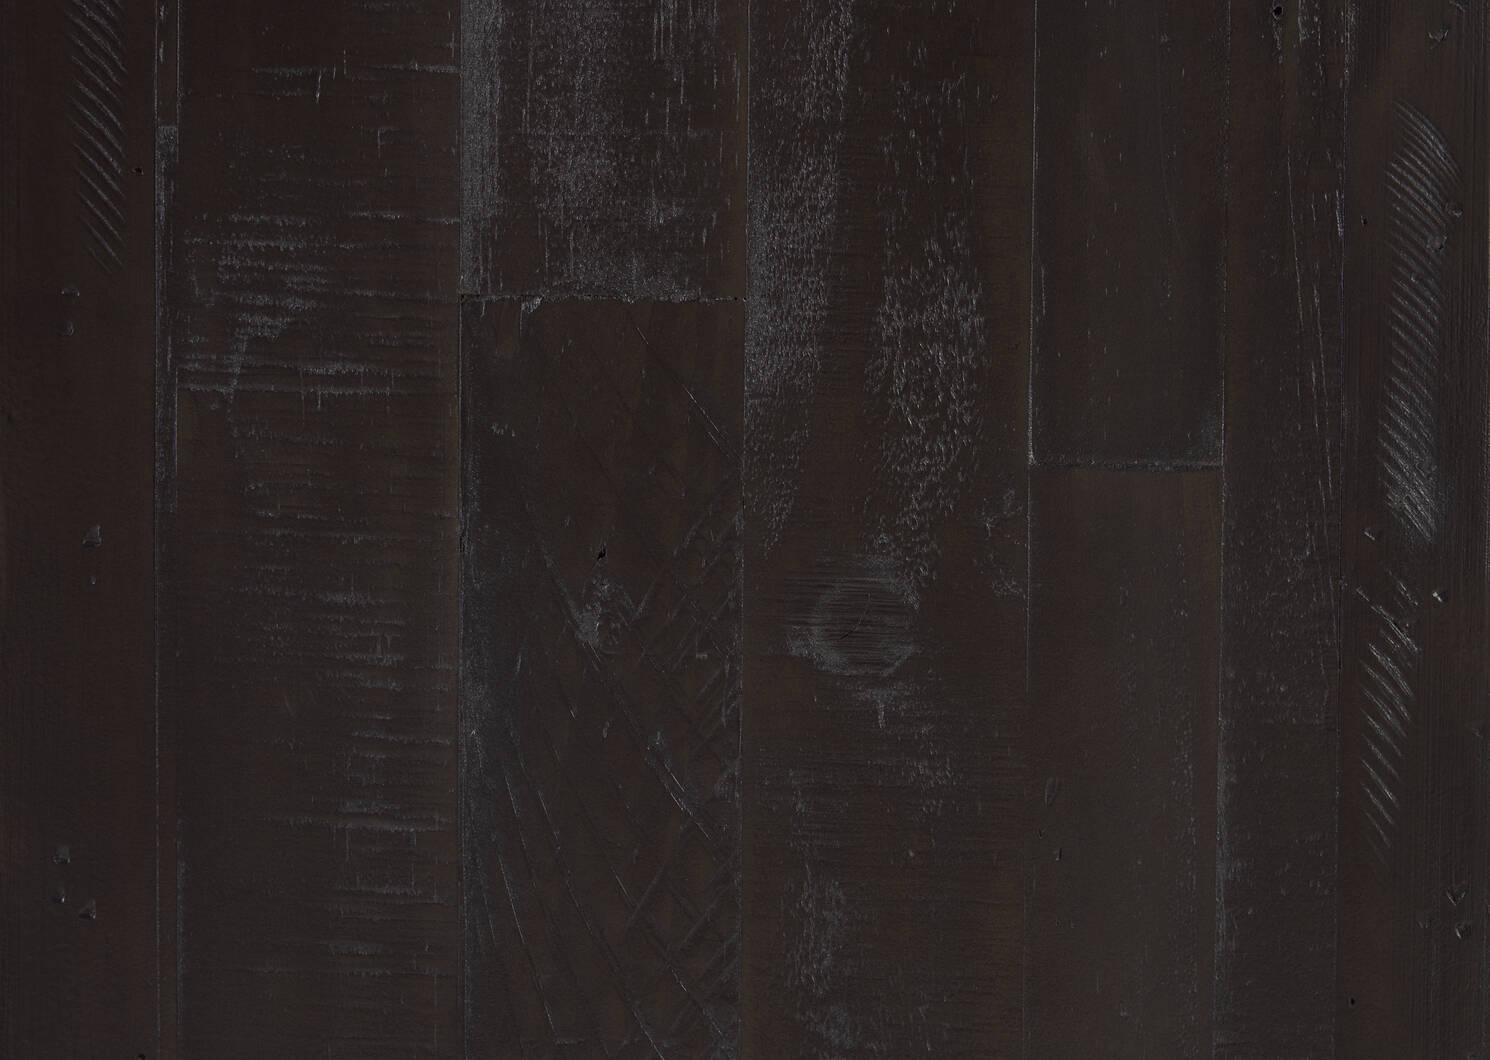 Goodwin Sideboard -Fernie Charcoal